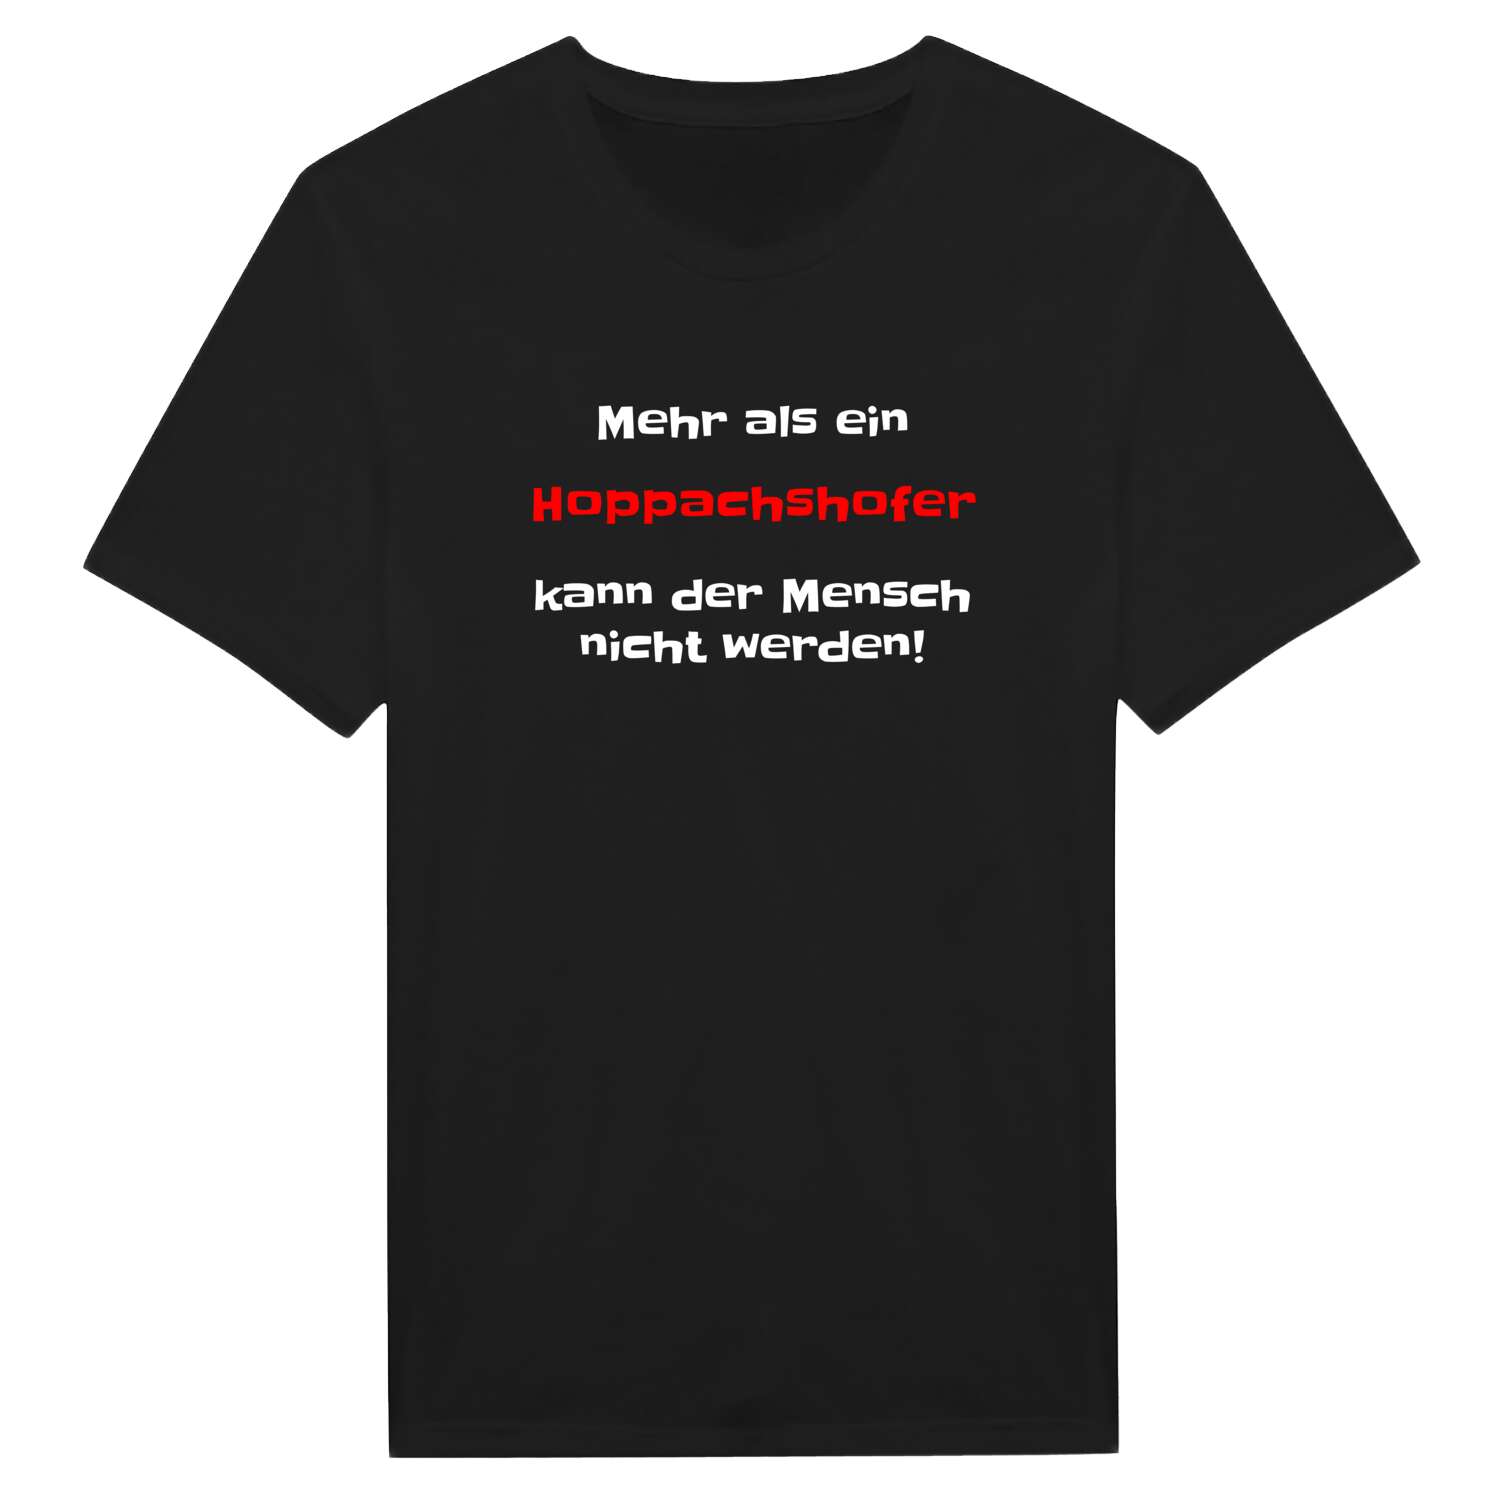 Hoppachshof T-Shirt »Mehr als ein«